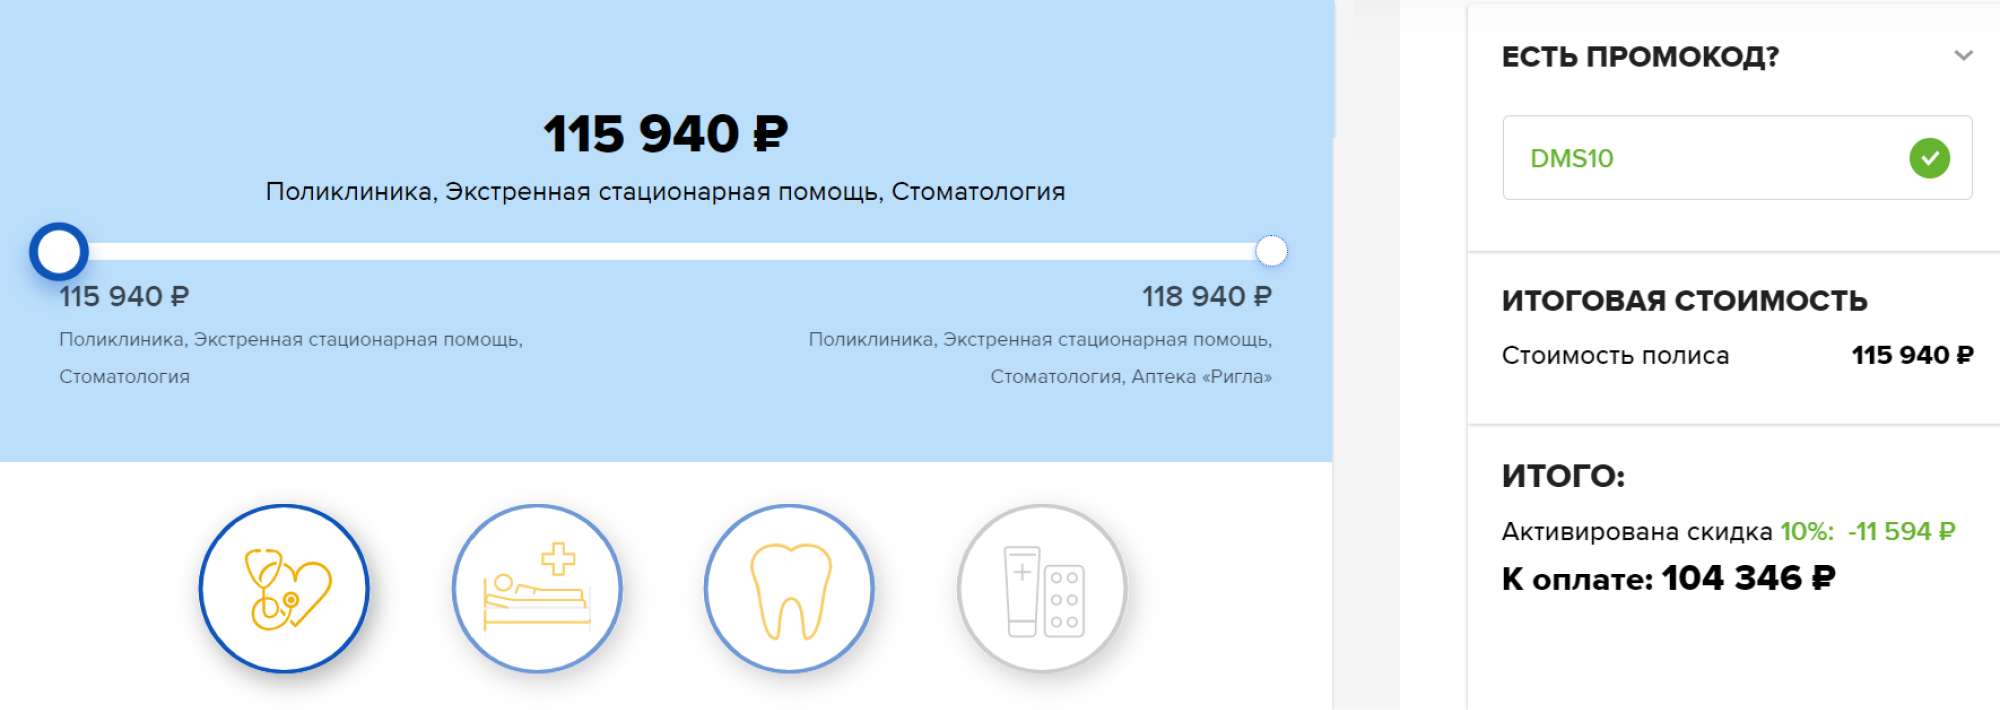 У «Ингосстраха» ДМС с госпитализацией и стоматологией стоит 115 940 ₽